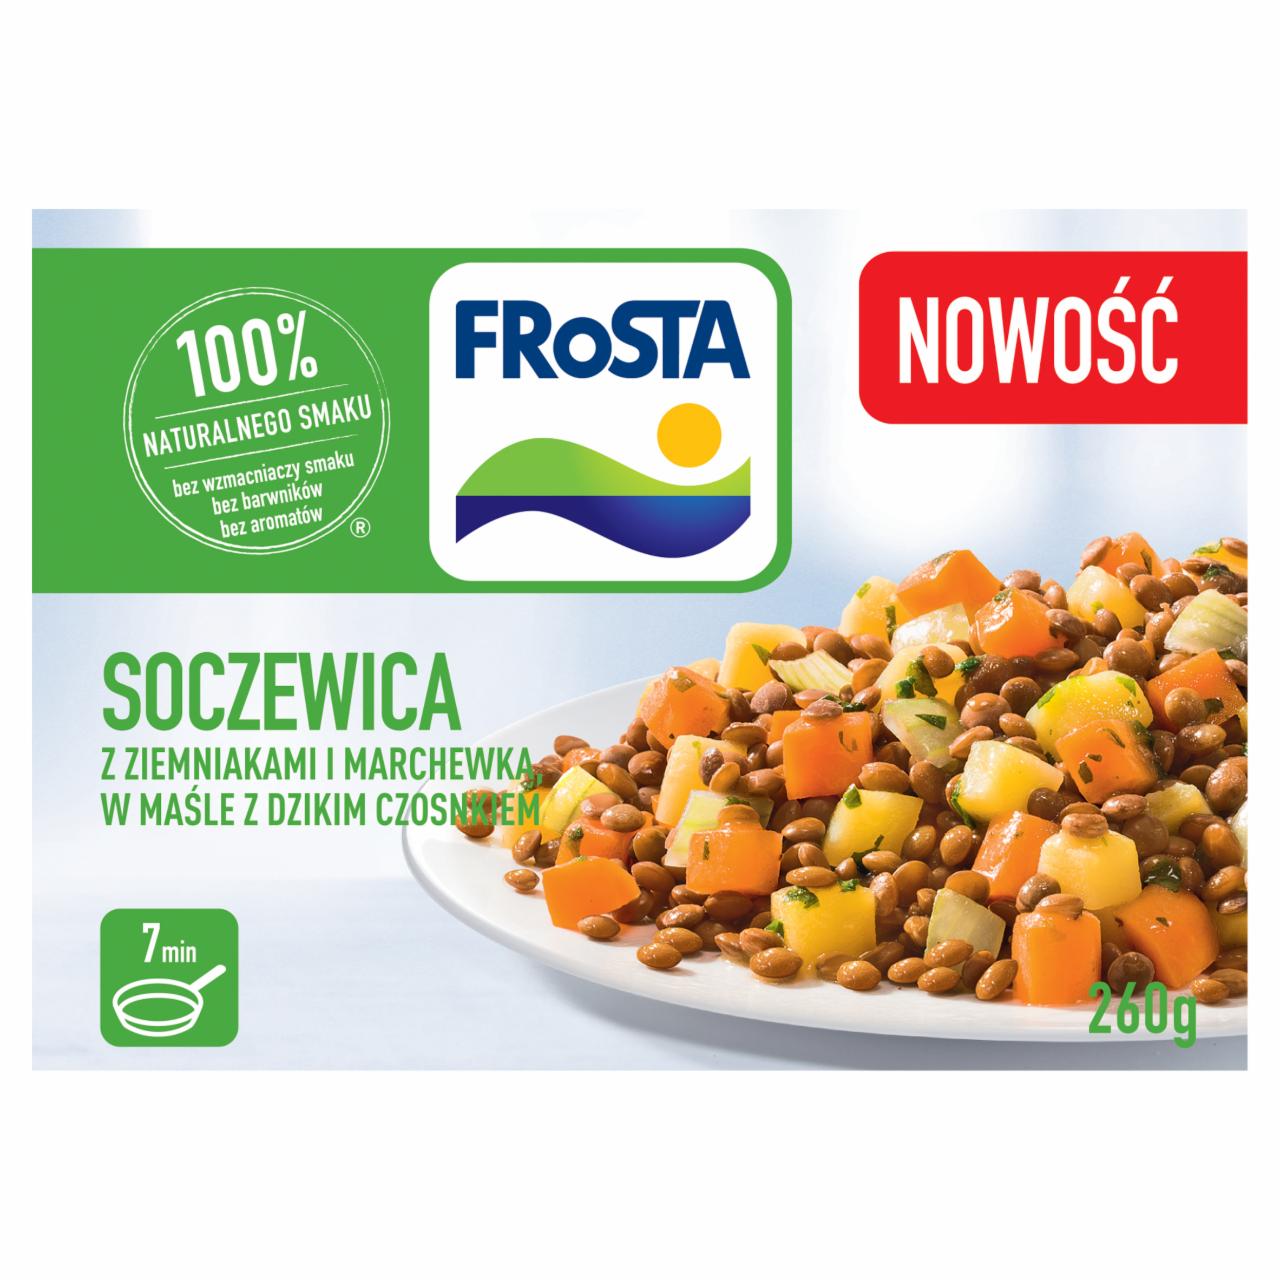 Zdjęcia - FRoSTA Soczewica z ziemniakami i marchewką w maśle z dzikim czosnkiem 260 g